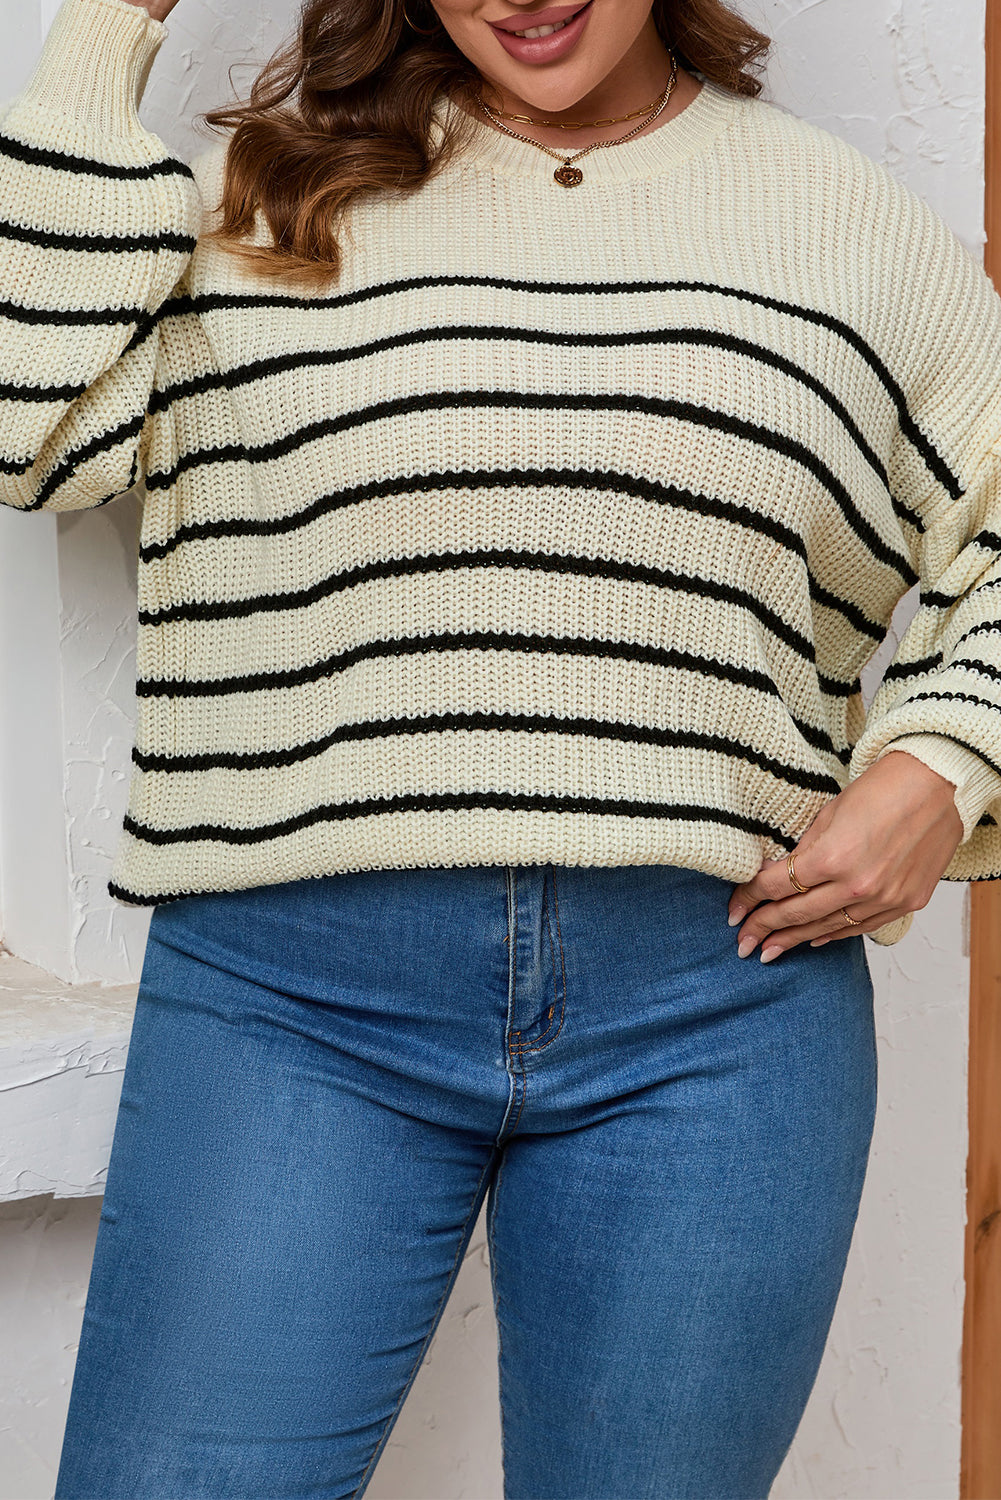 Kaki pulover s puf rukavima na spuštena ramena velike veličine